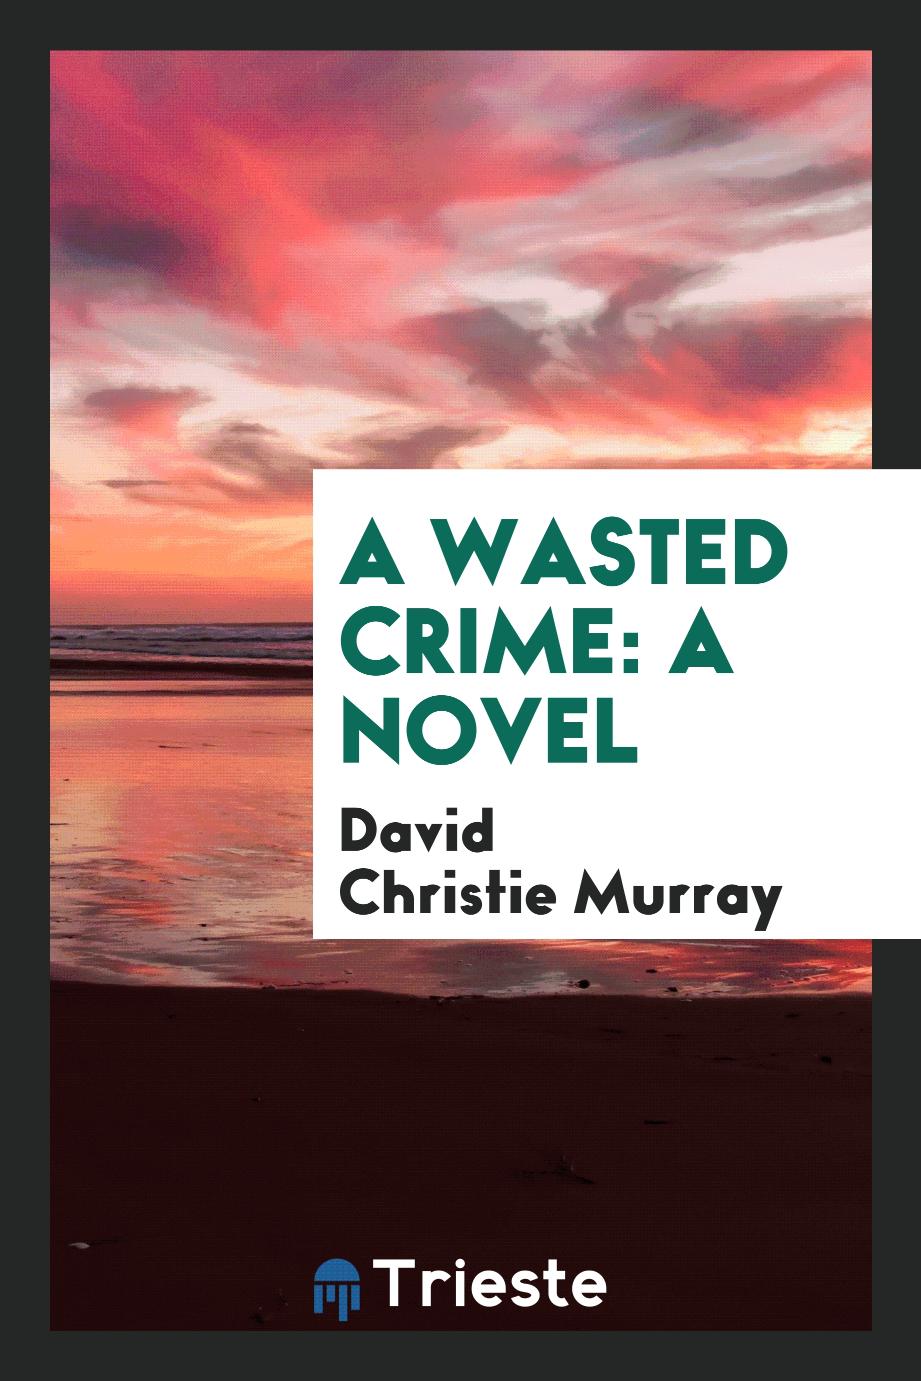 A Wasted Crime: A Novel